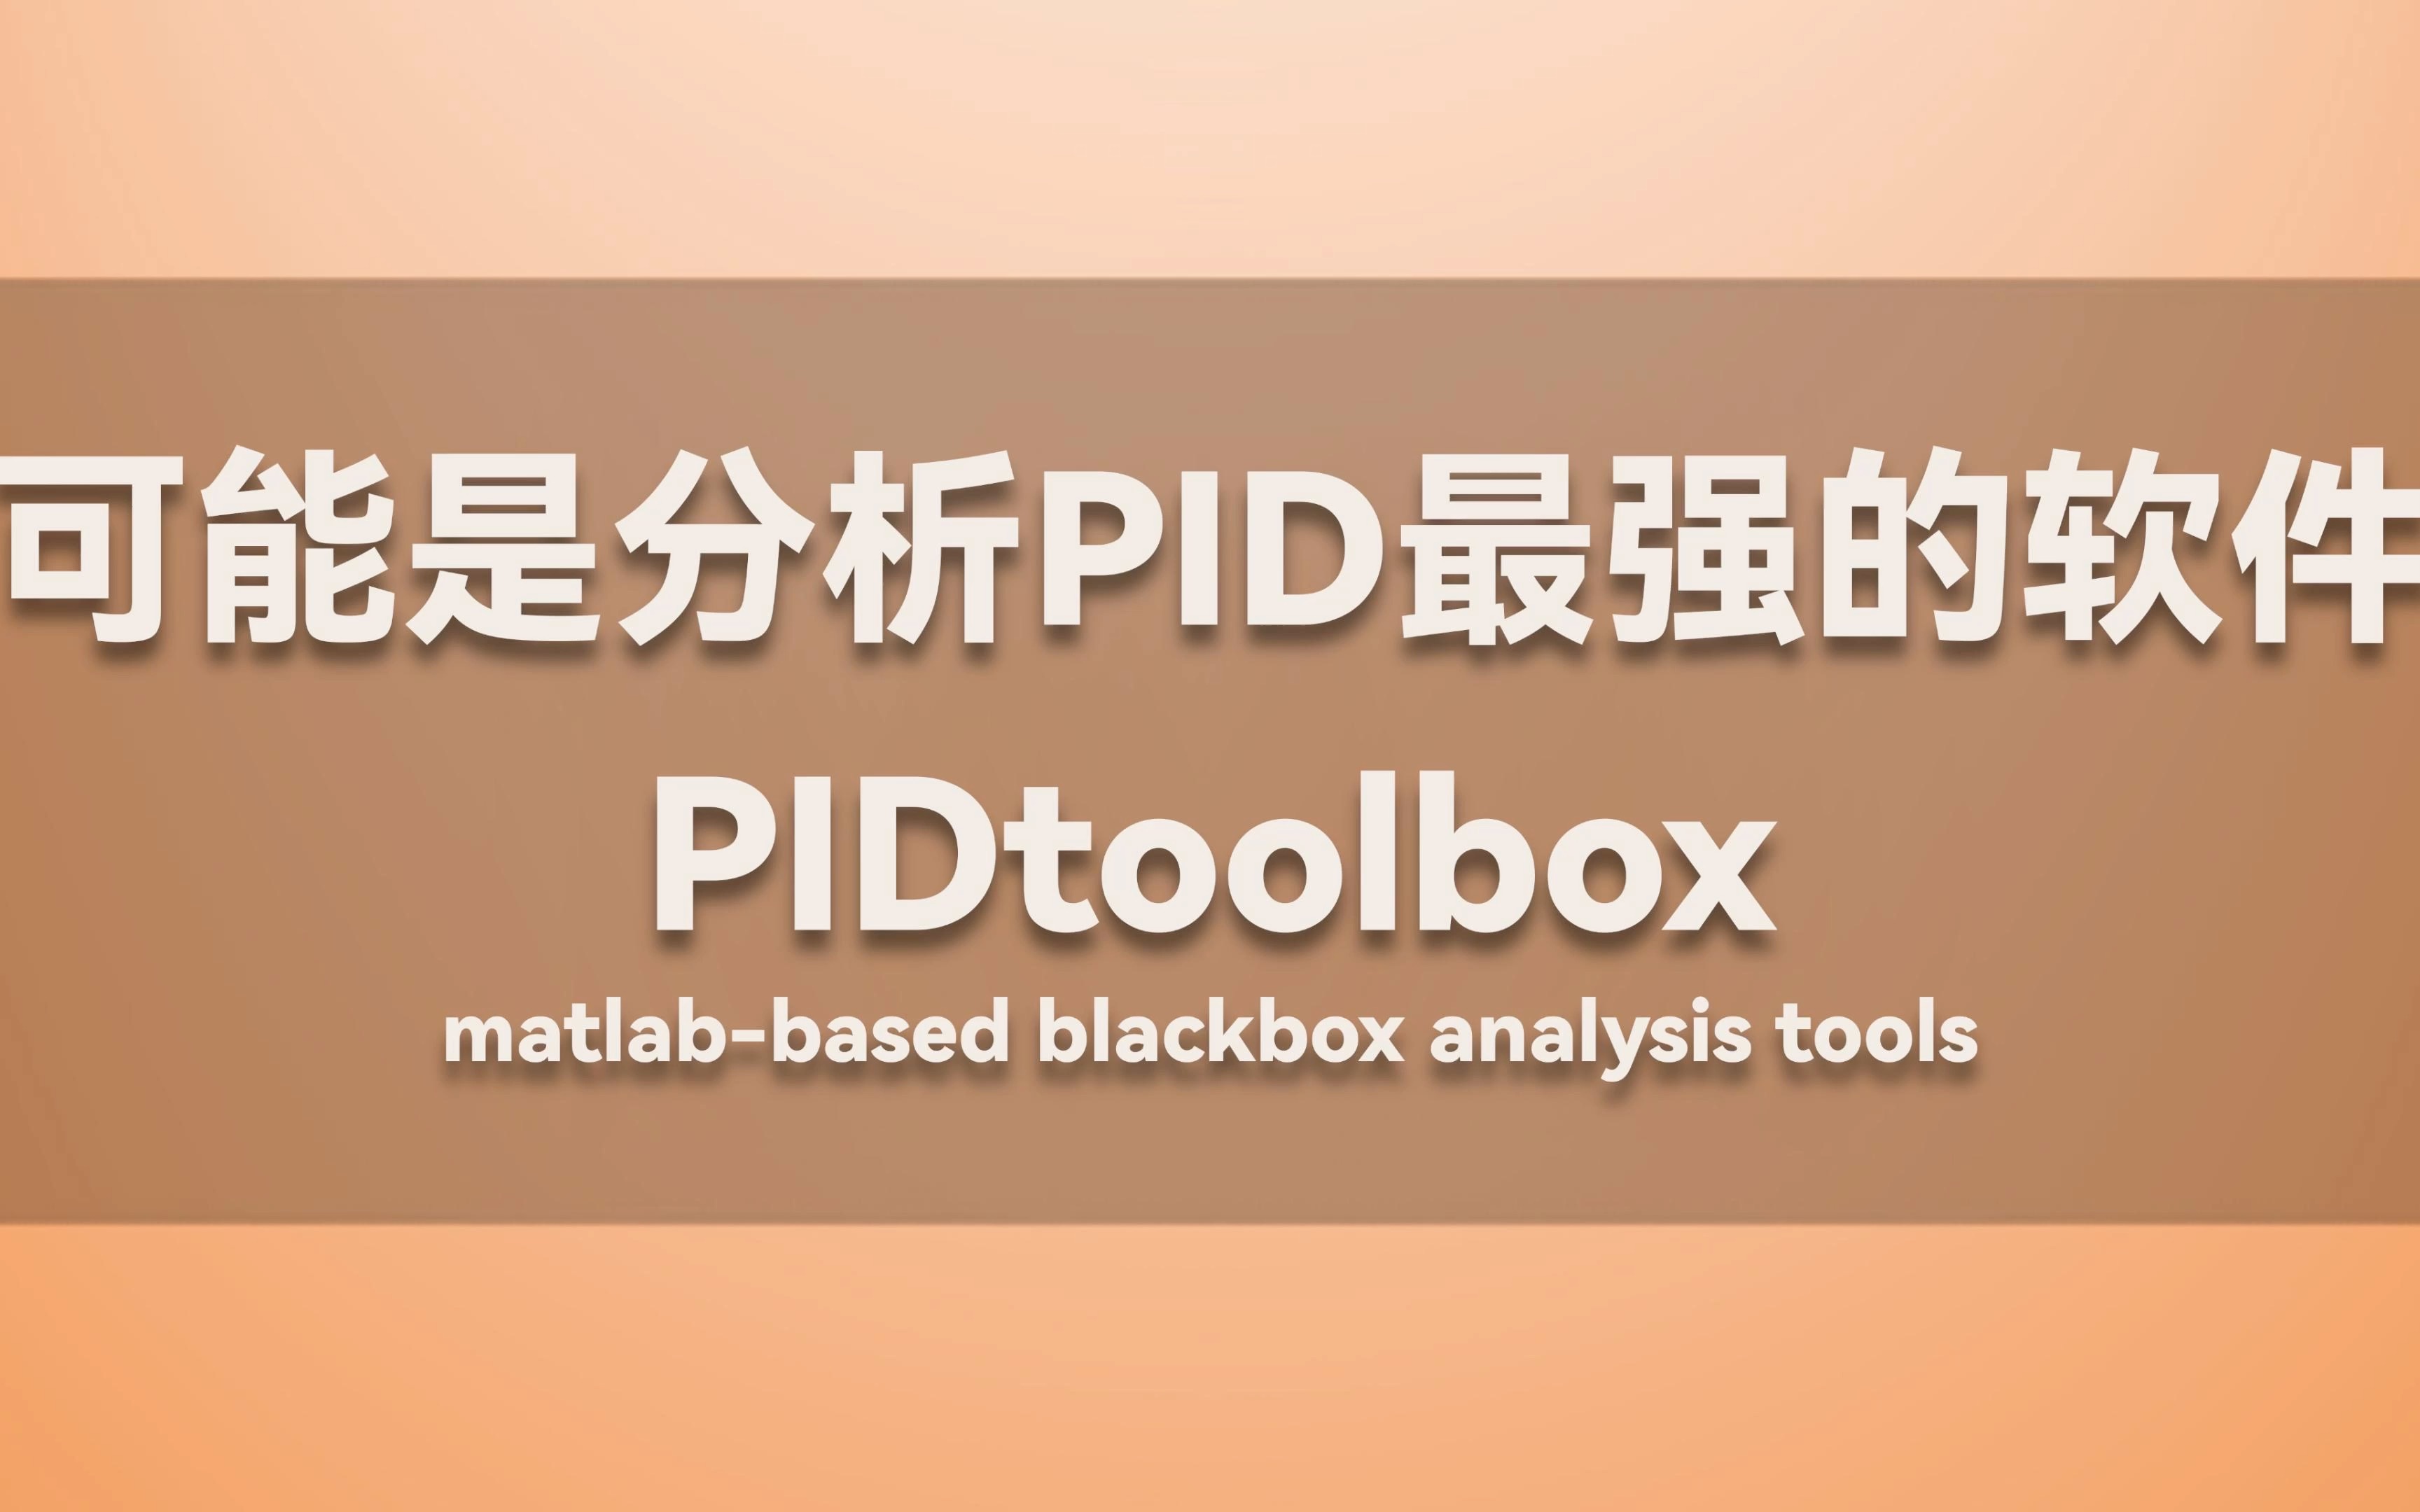 可能是分析PID最强的软件：PIDtoolbox